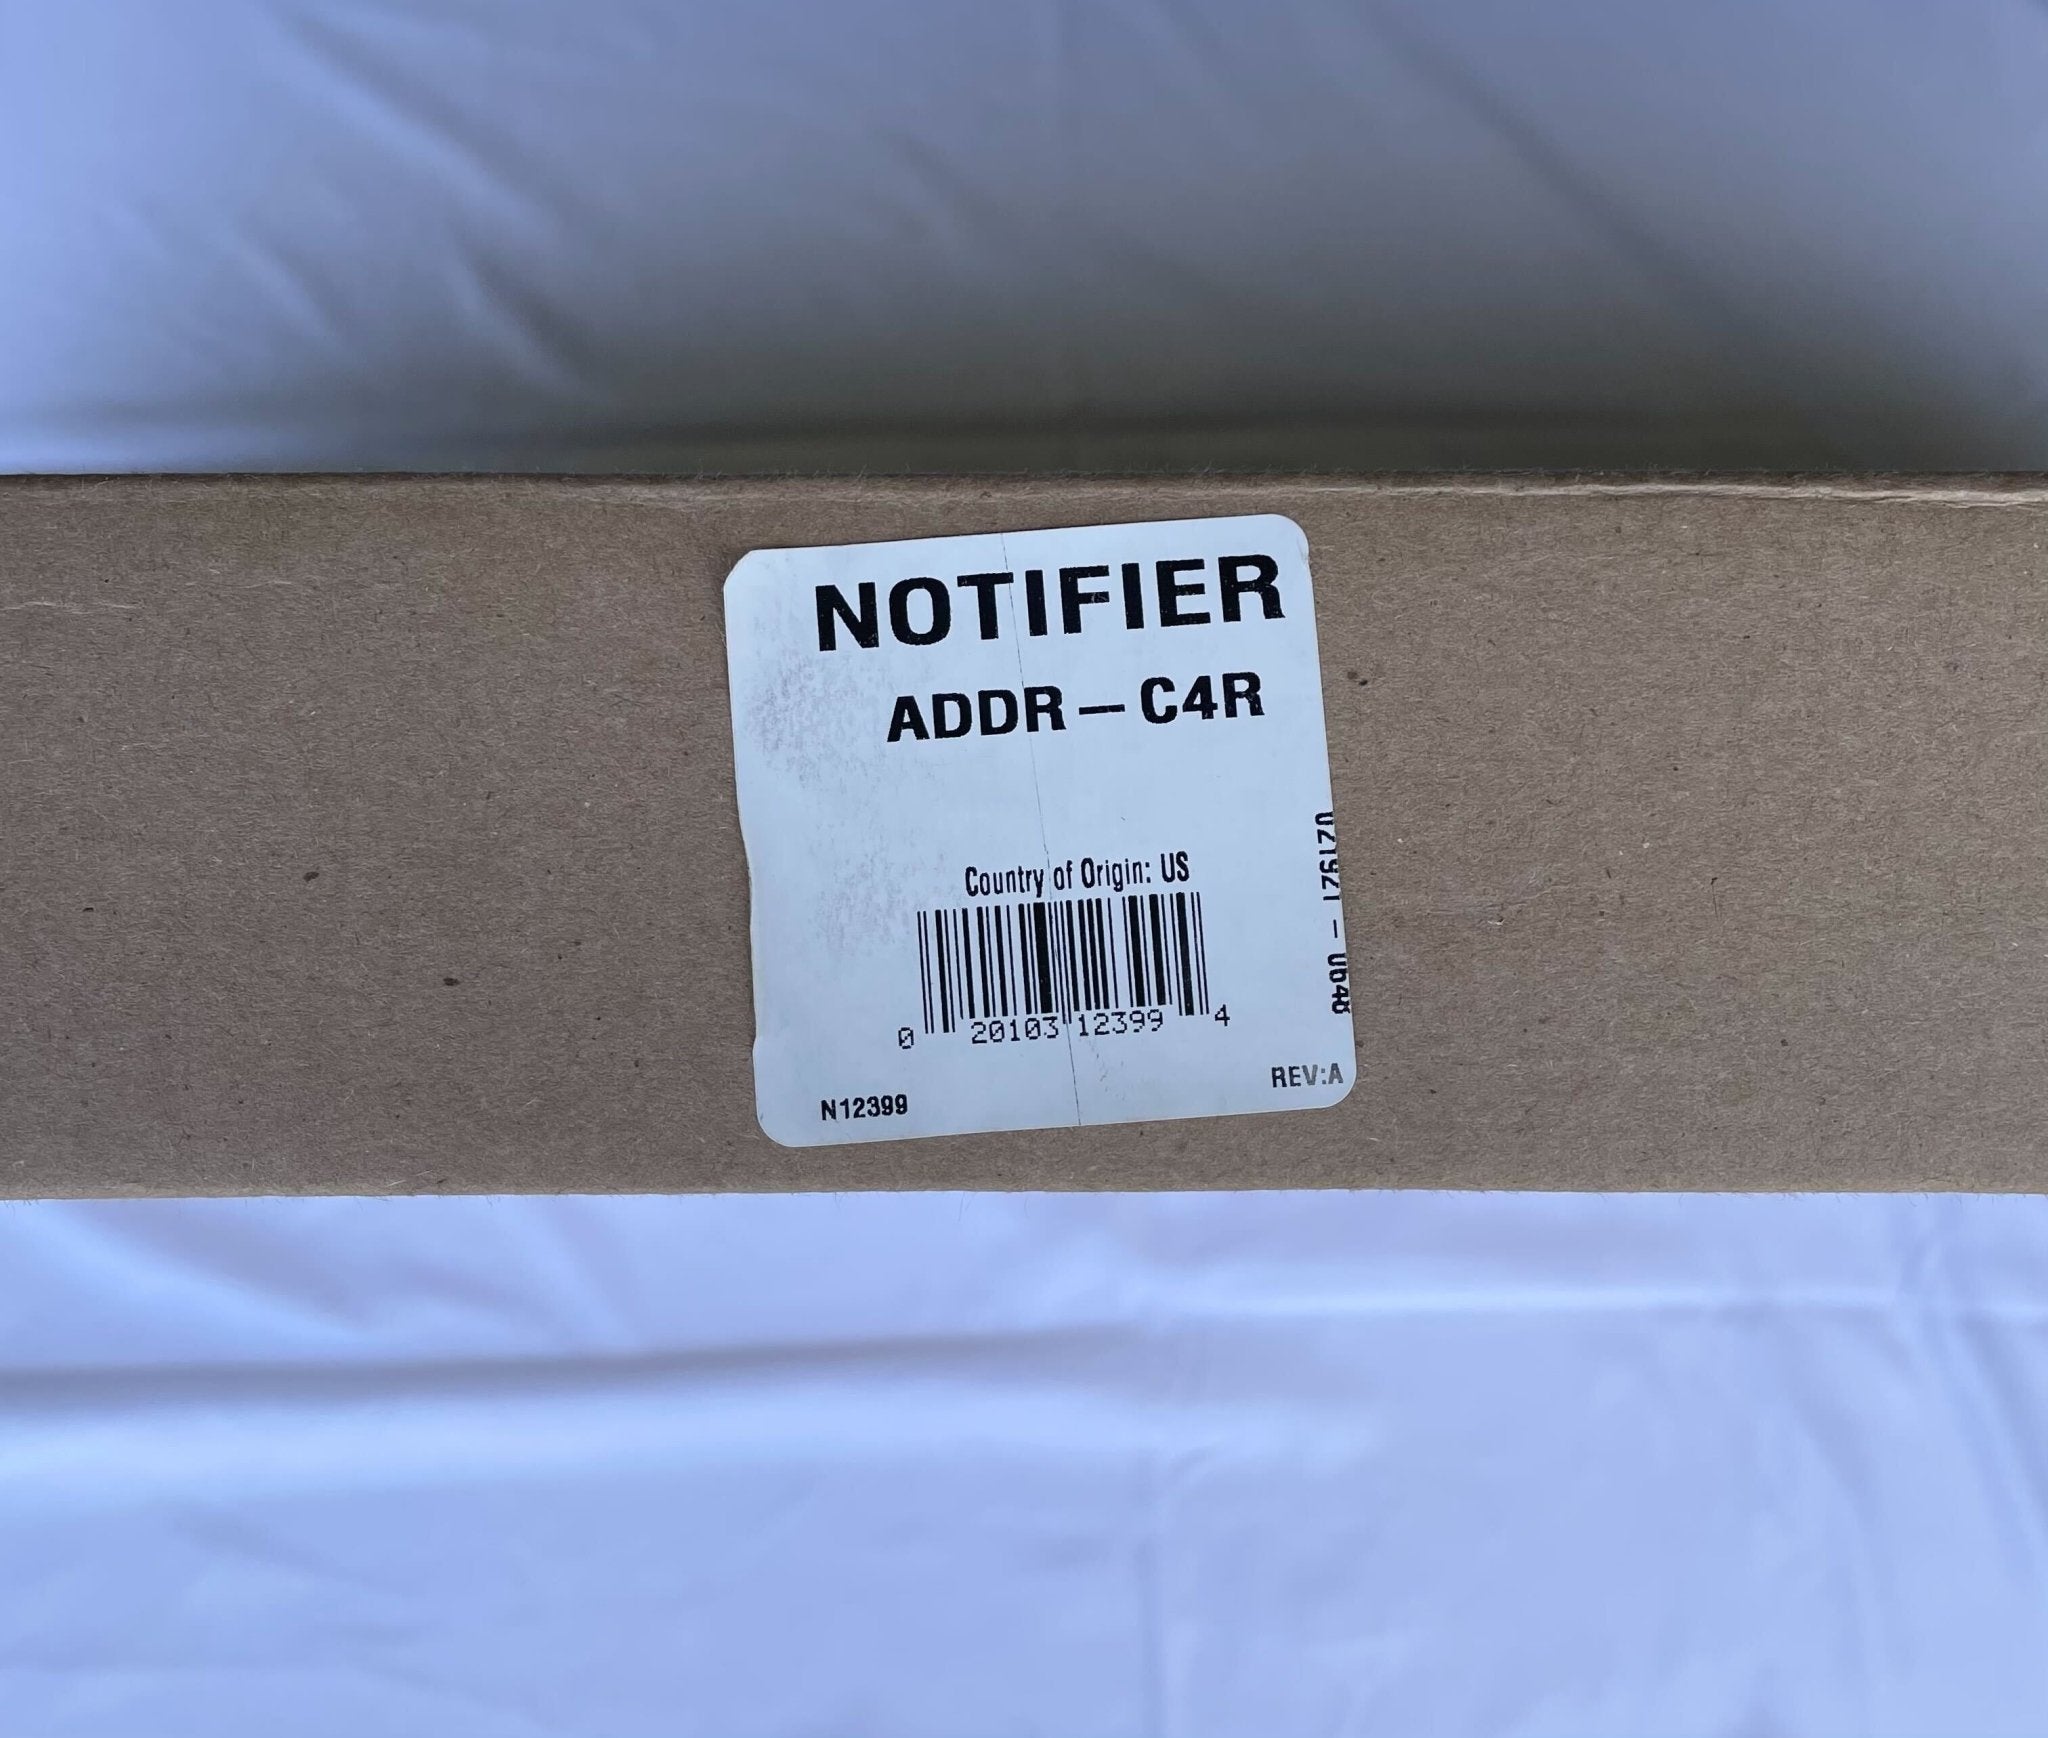 Notifier ADDR-C4R - The Fire Alarm Supplier